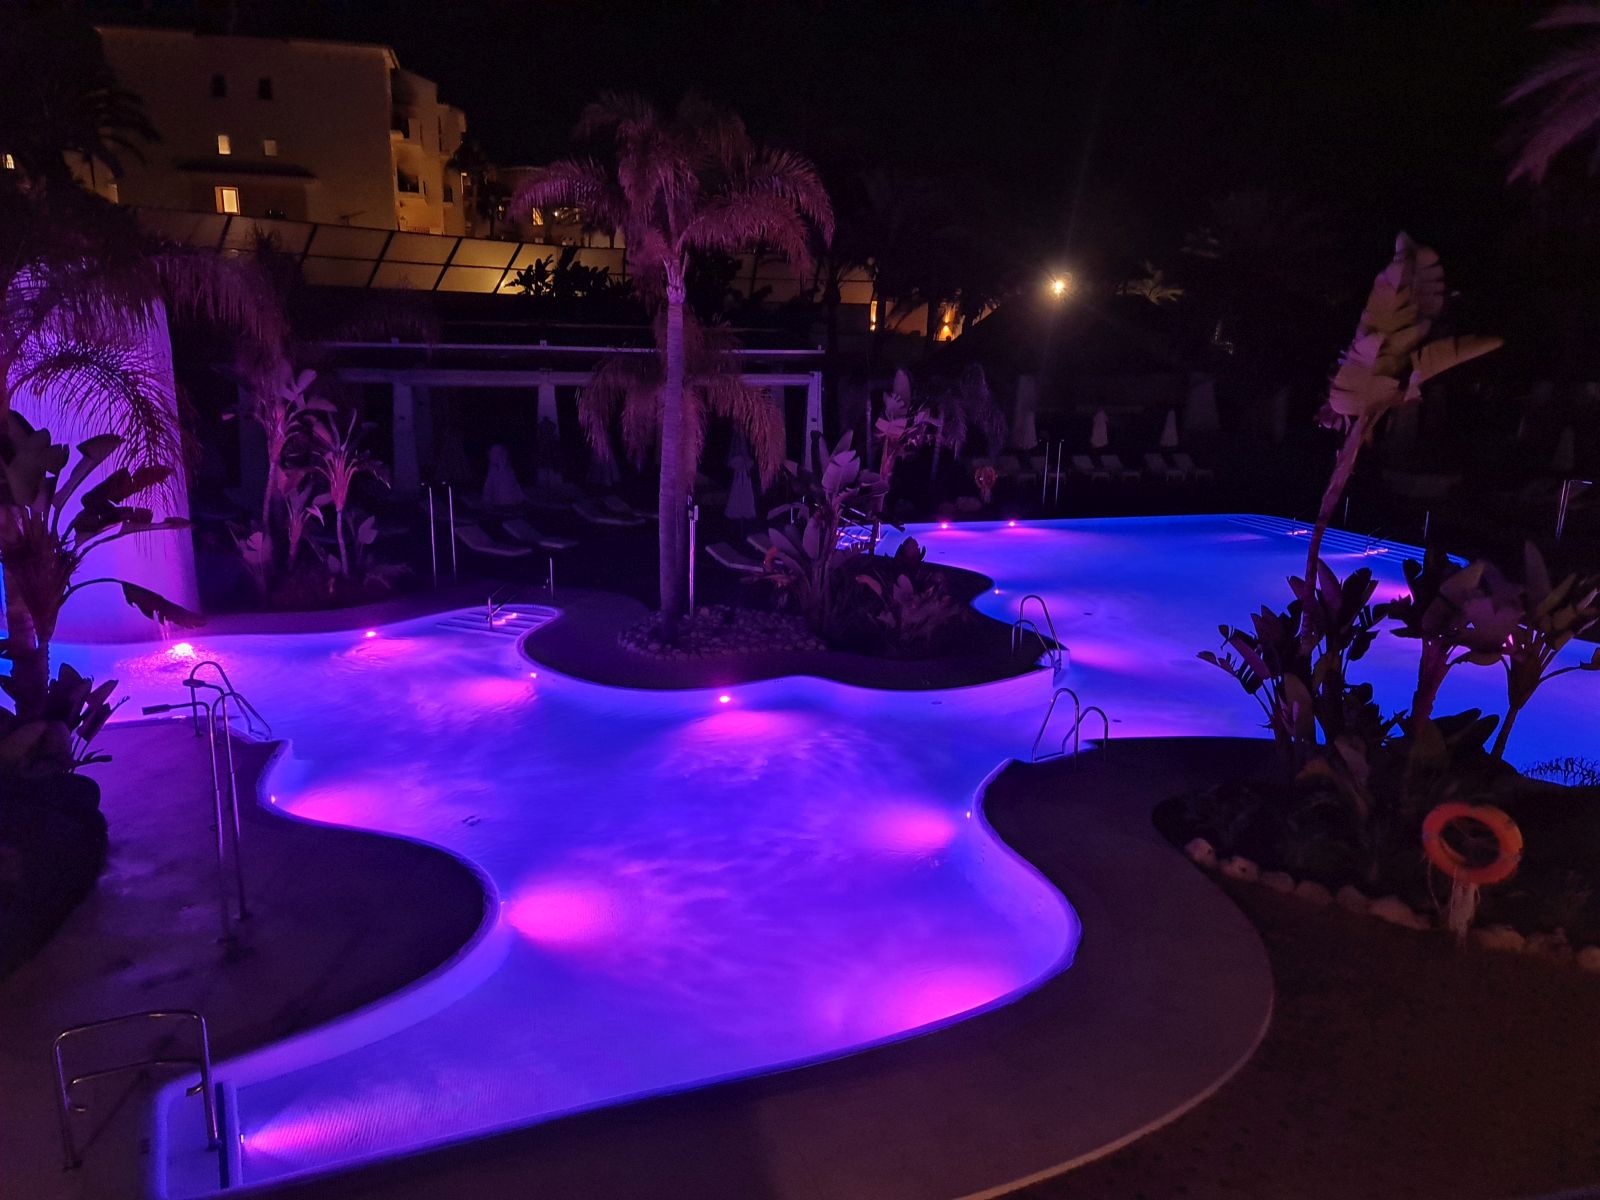 Nu mi-a plăcut cum era luminată piscina pe timpul nopții pentru că totul părea artificial în comparație cu ce vedeai ziua, dar cert este că pentru mulți turiști modul acesta de iluminat atrăgea atenția.